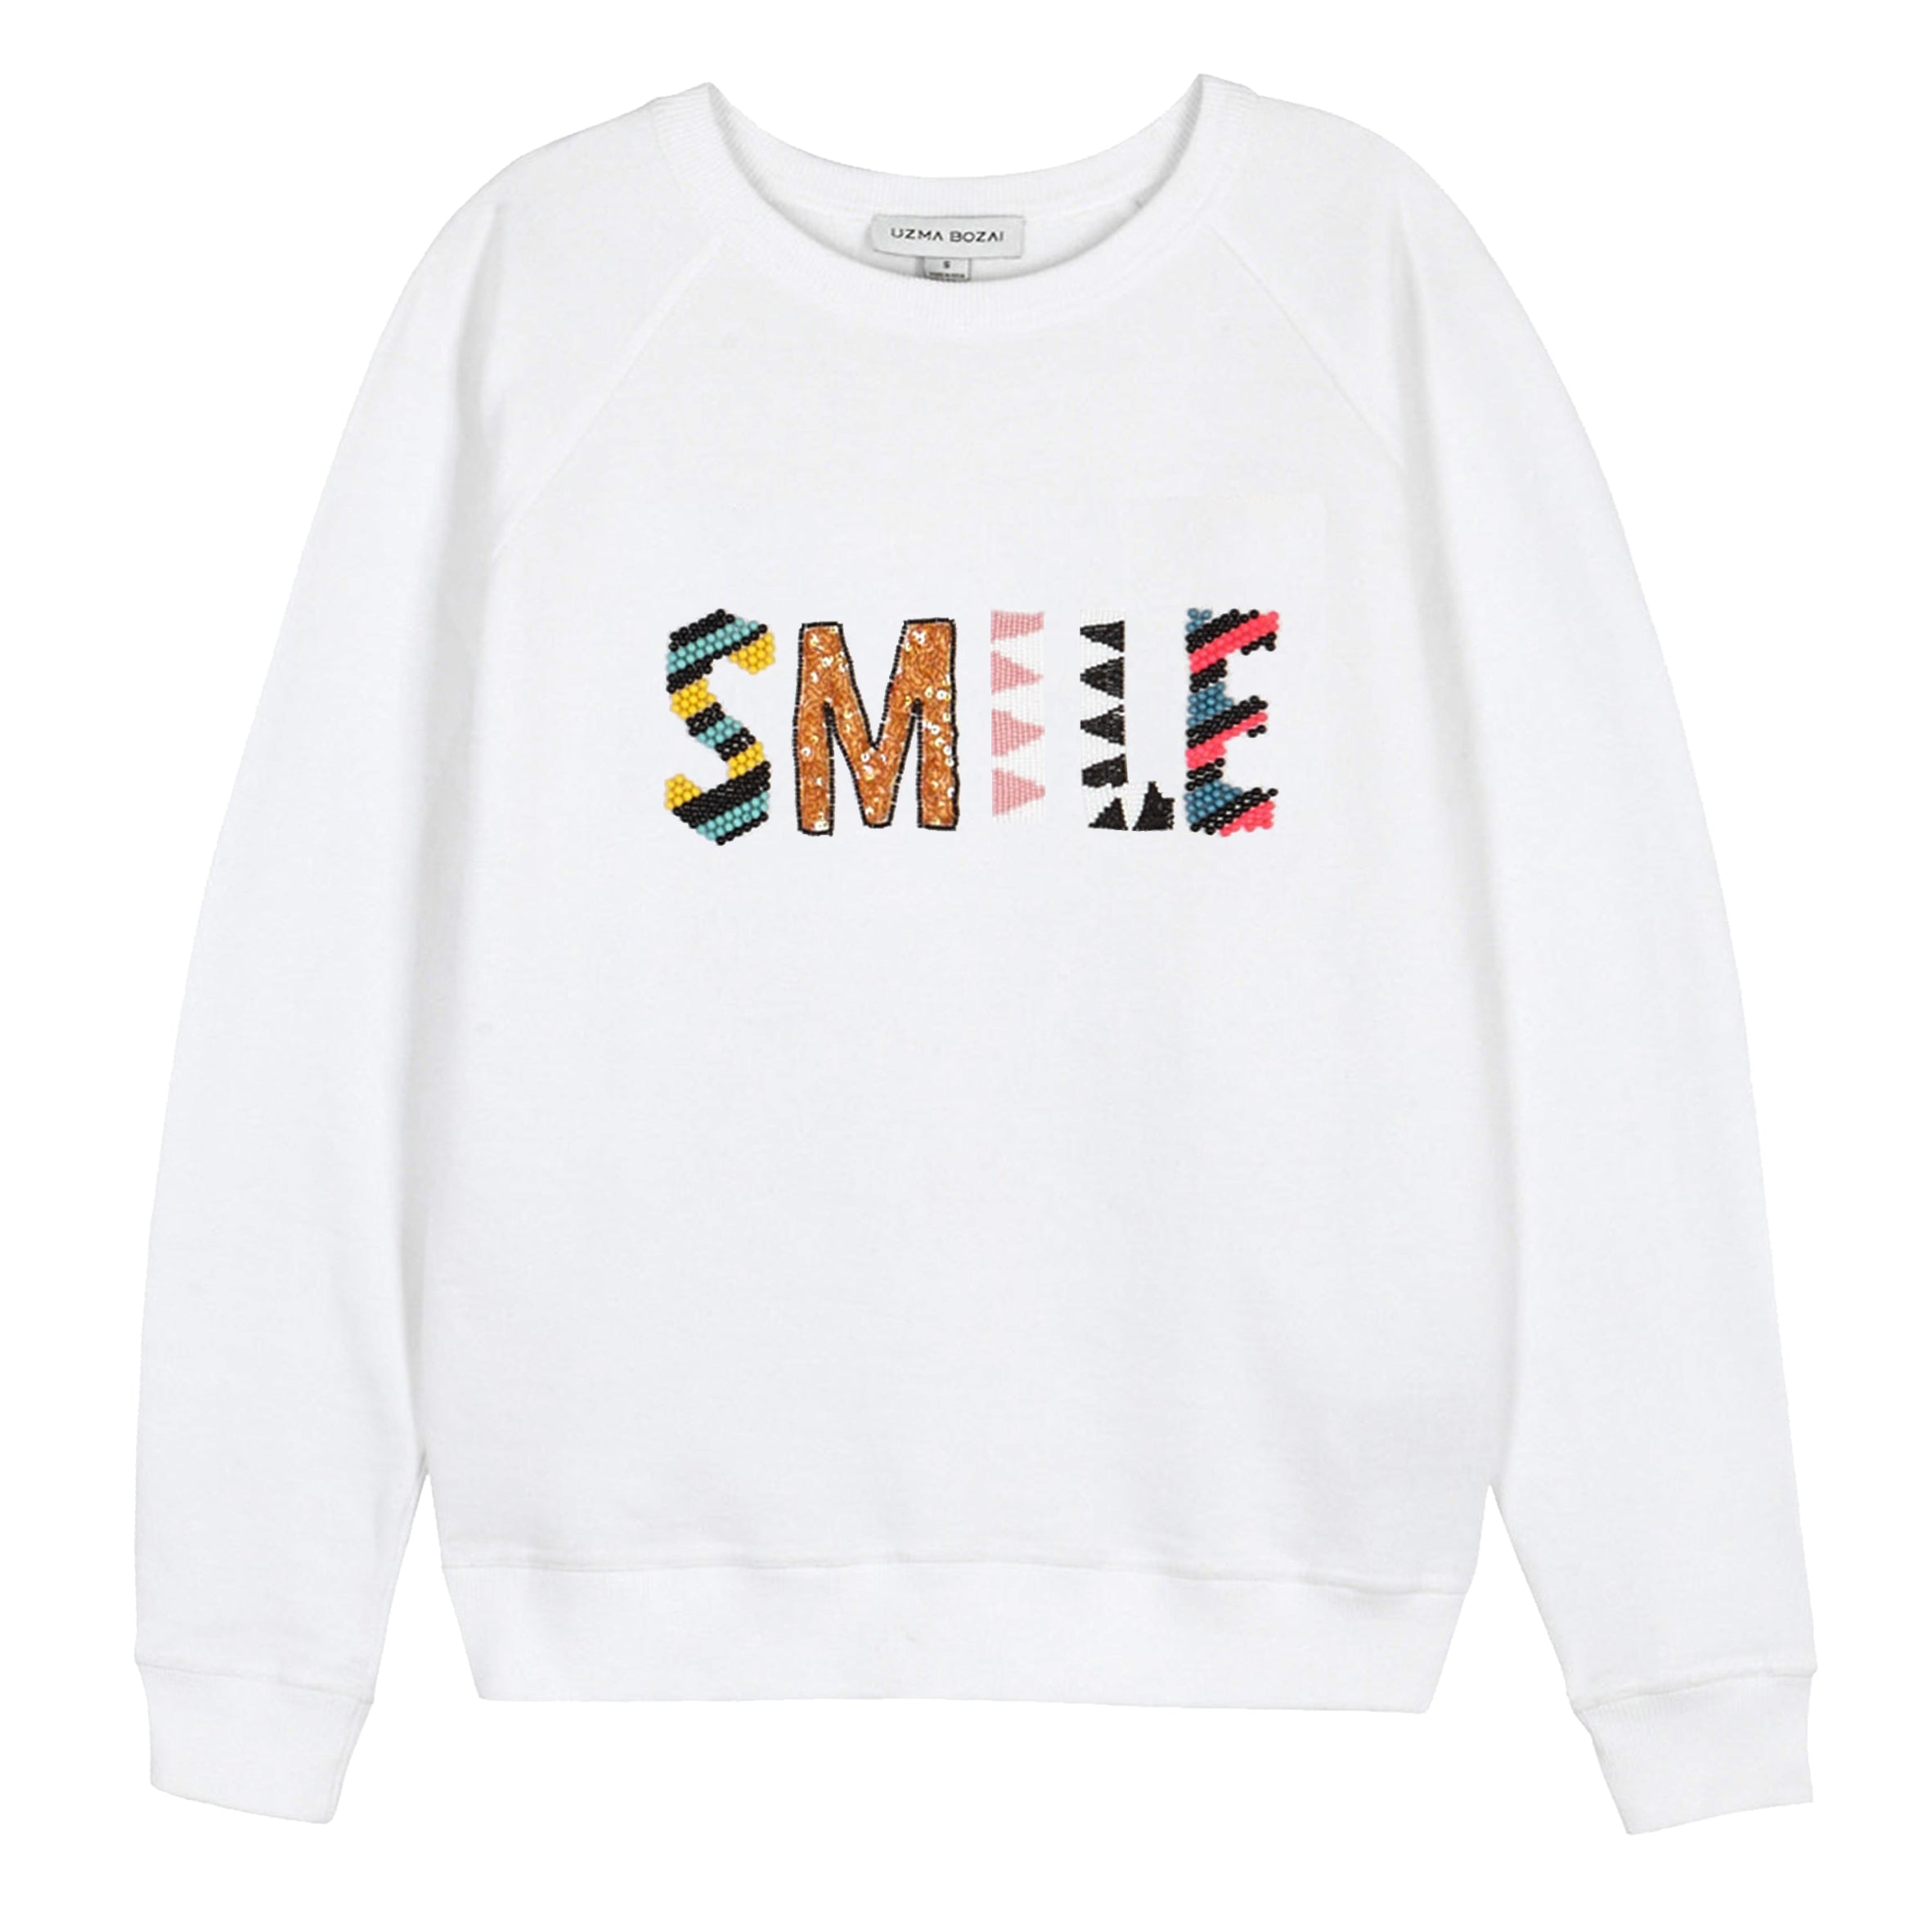 SMILE-SWEATSHIRT-WHITE_4f8be8a1-2ede-4086-865b-2f5979c0fcb0.jpg